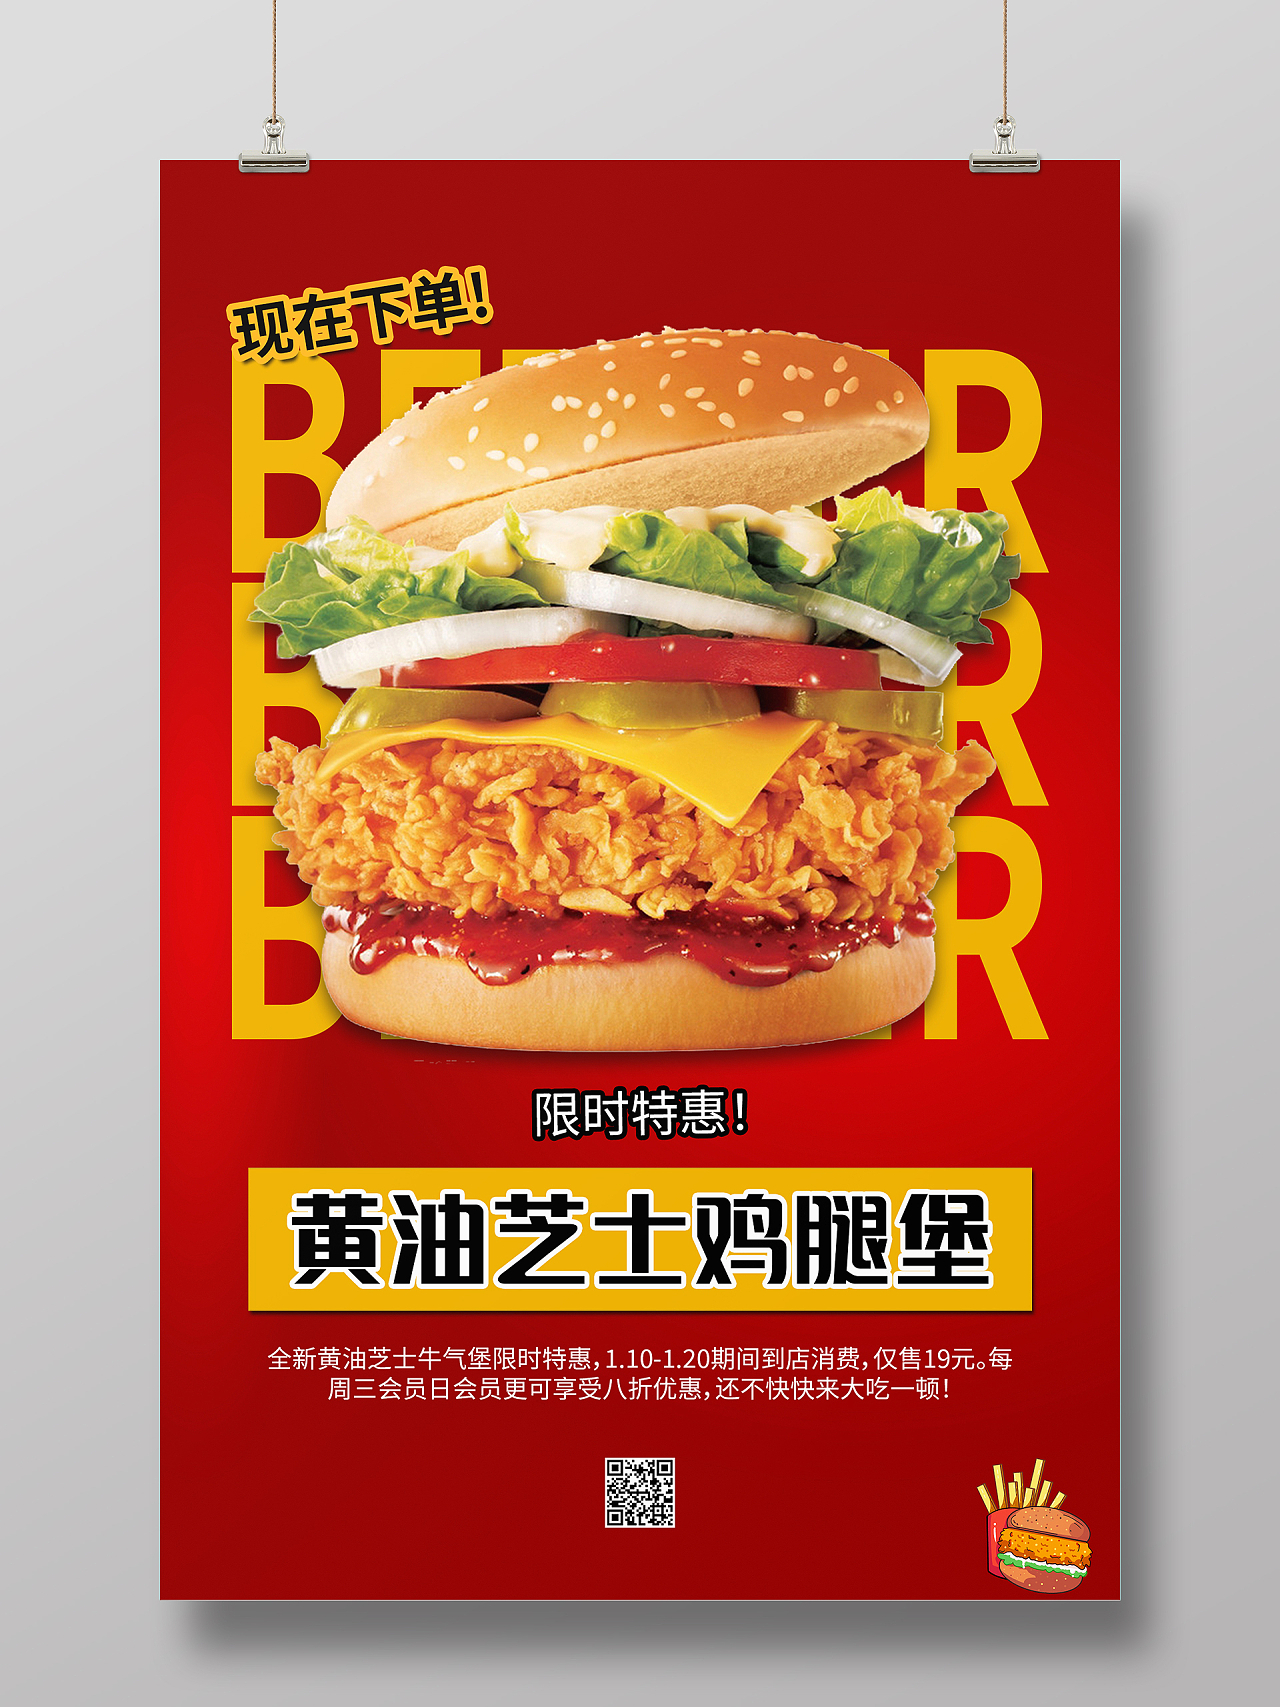 红色简约大气黄油芝士鸡腿堡海报设计汉堡菜单